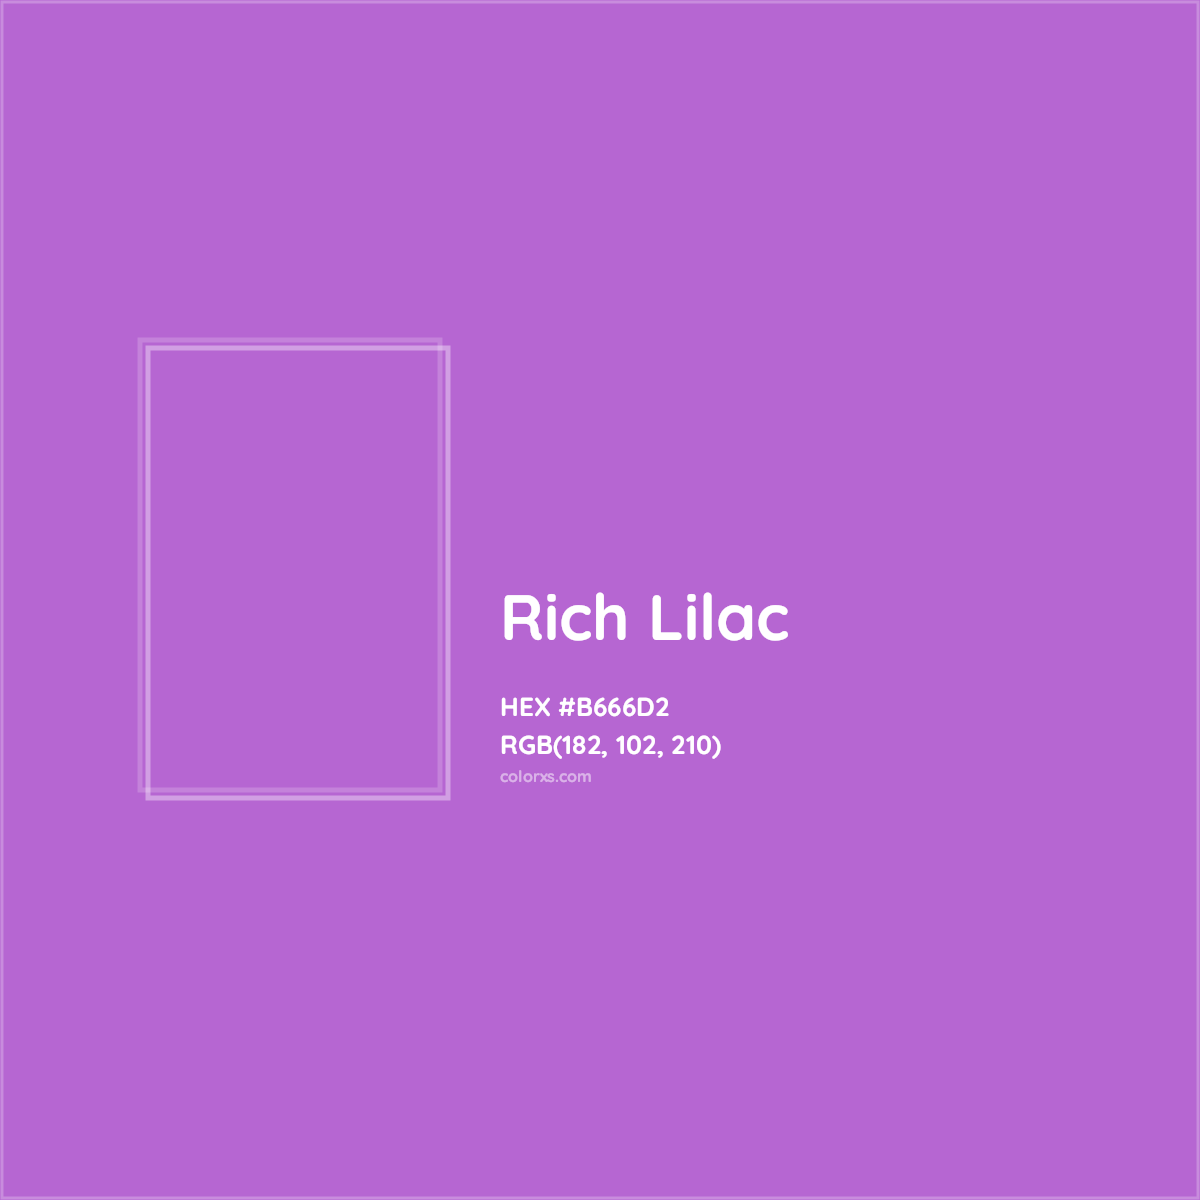 HEX #B666D2 Rich Lilac Color - Color Code